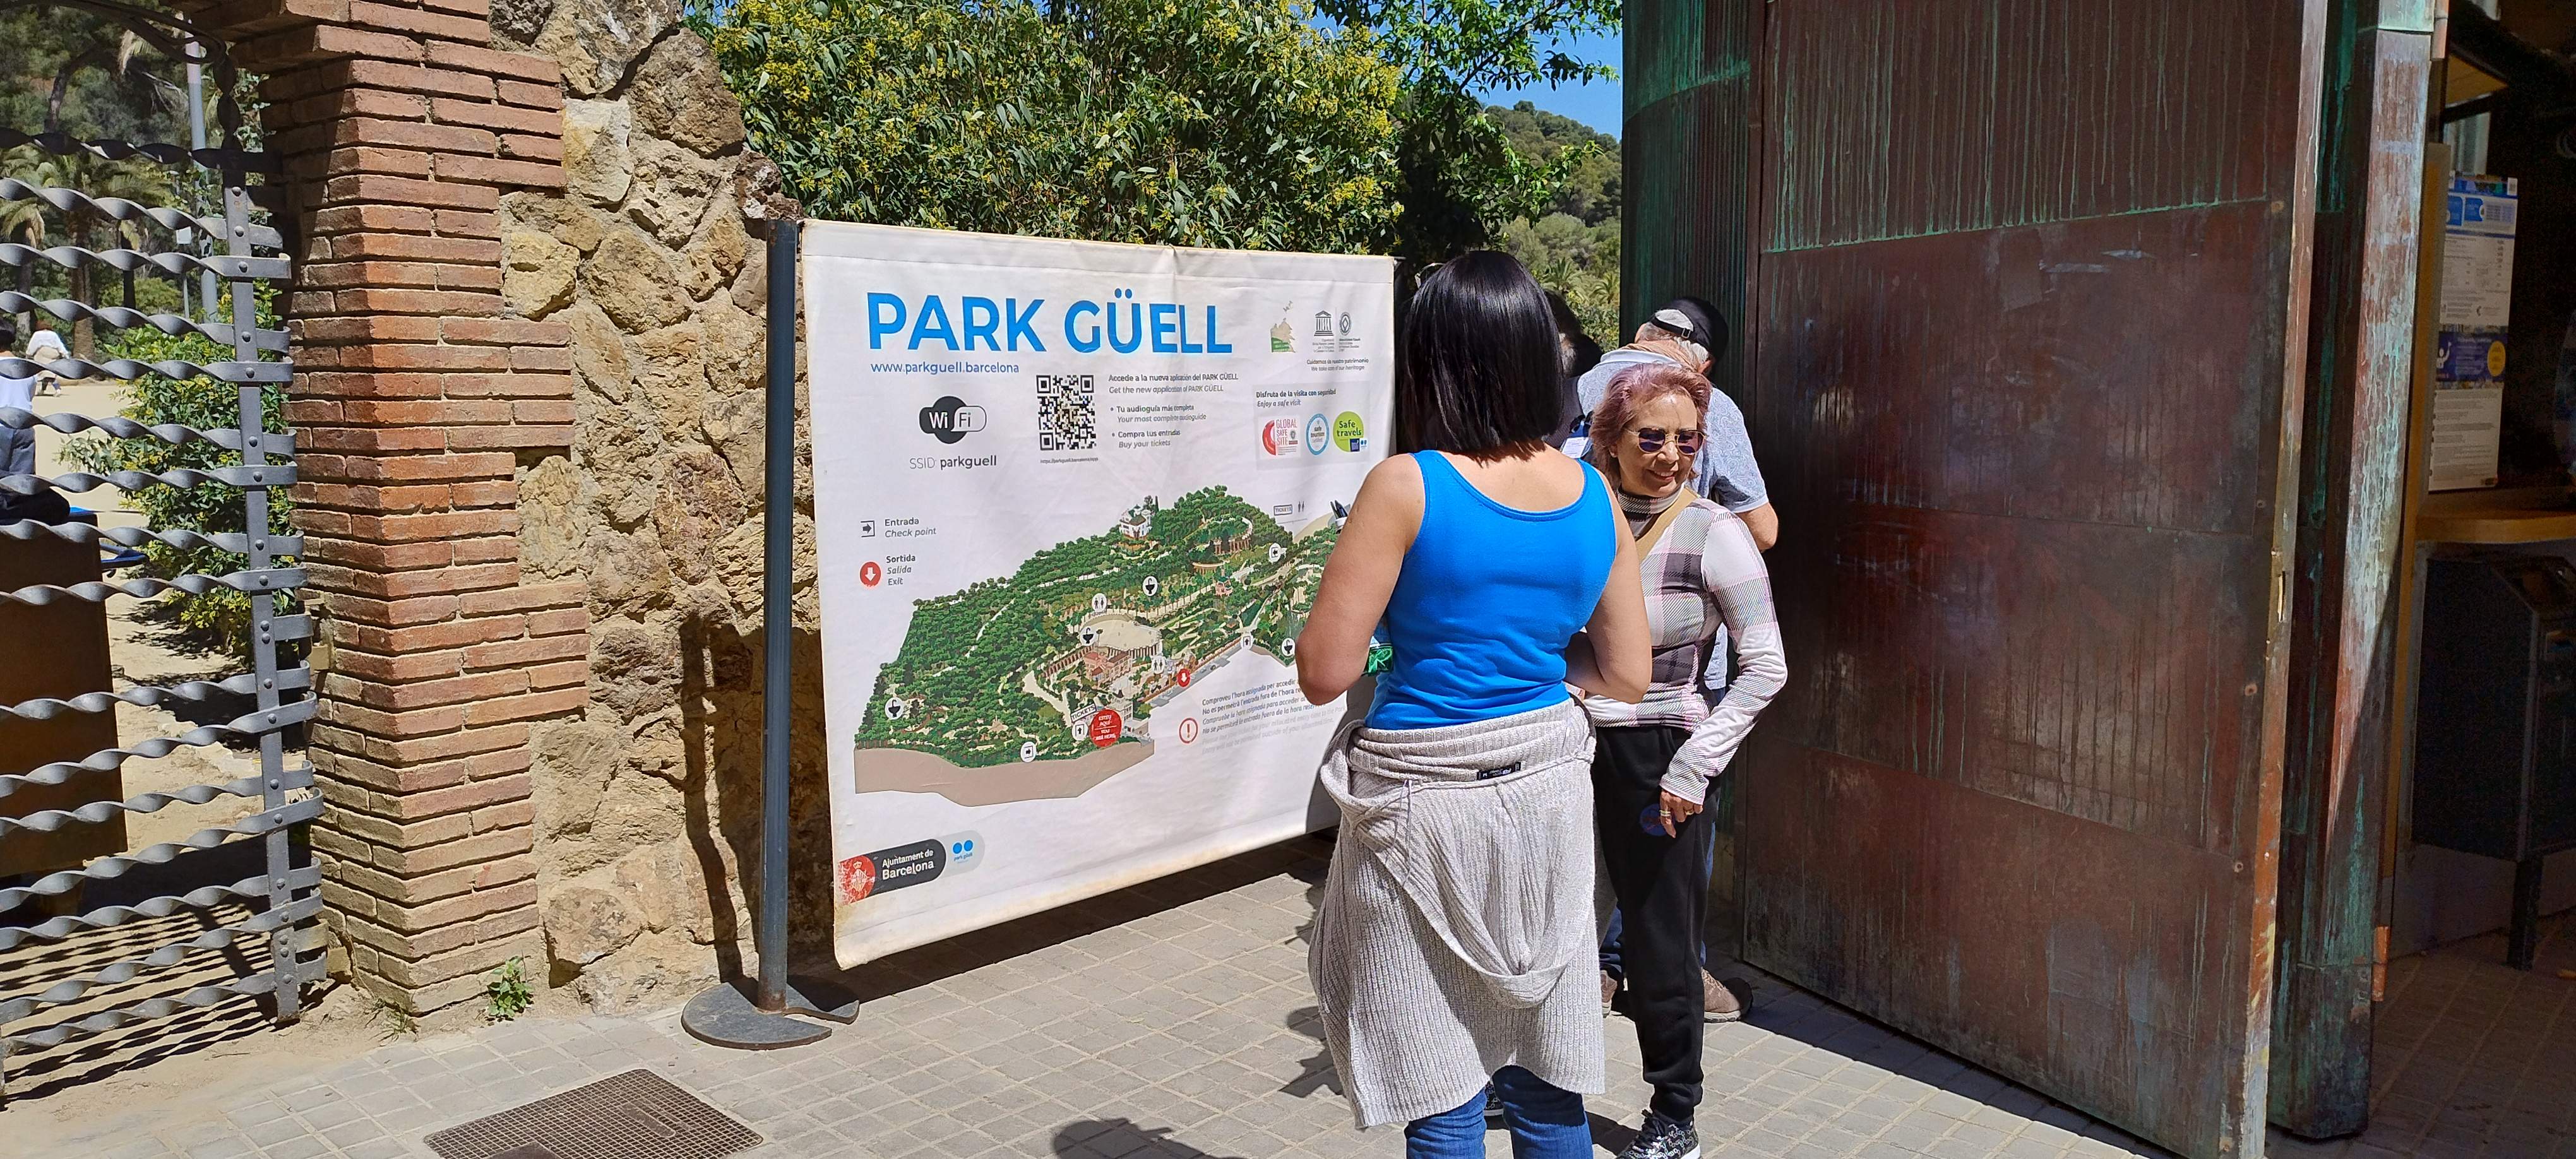 park guell accessos mobilitat barcelona foto jordi palmer (5)